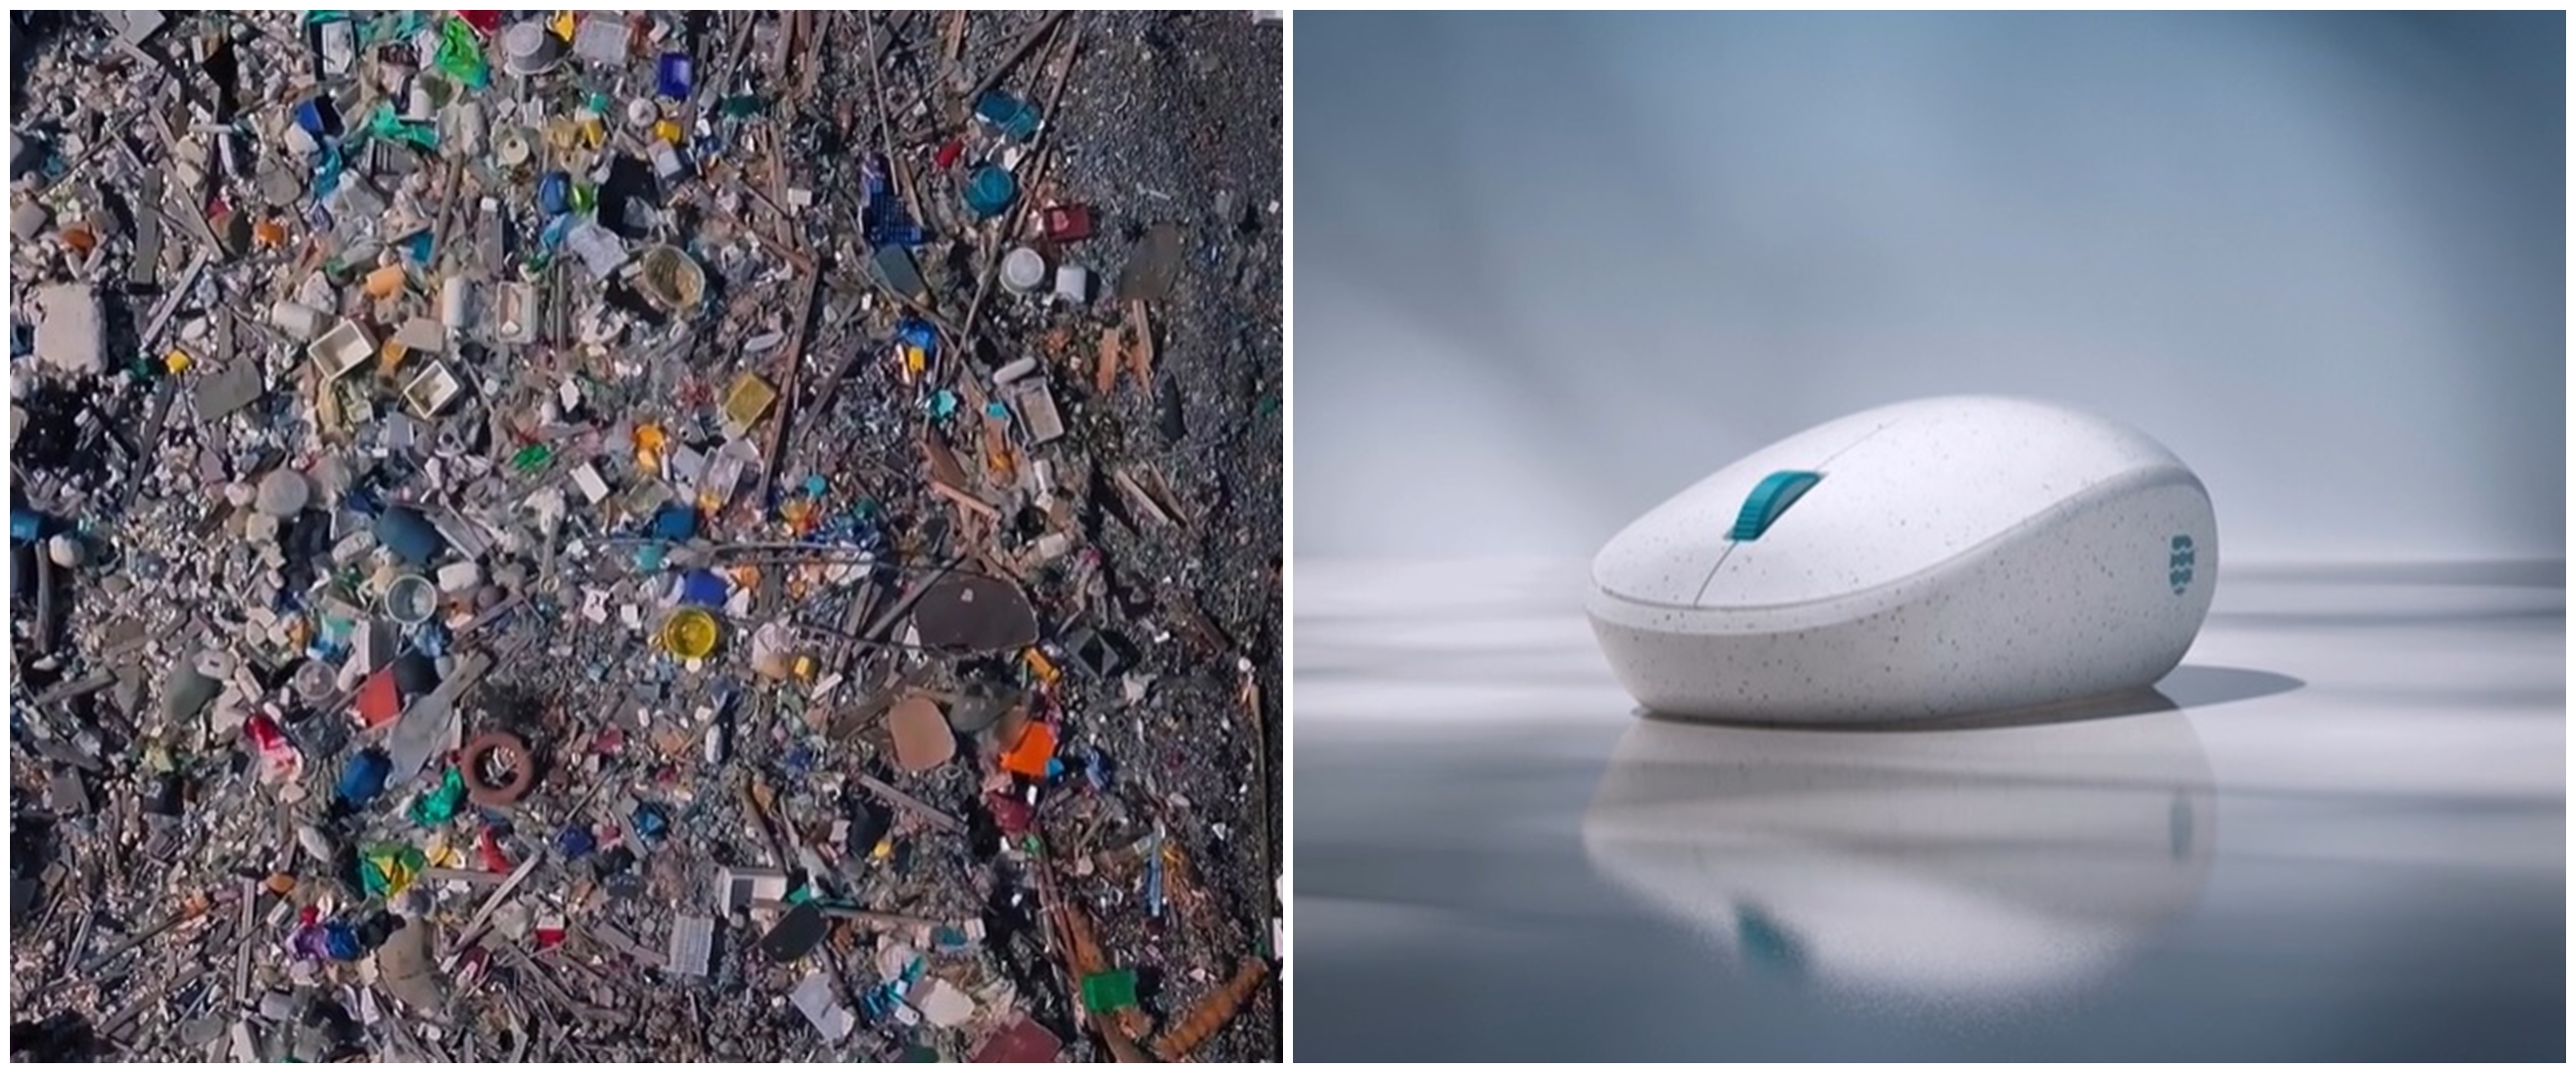 5 Fakta mouse Microsoft dari sampah laut, baterai tahan 12 bulan